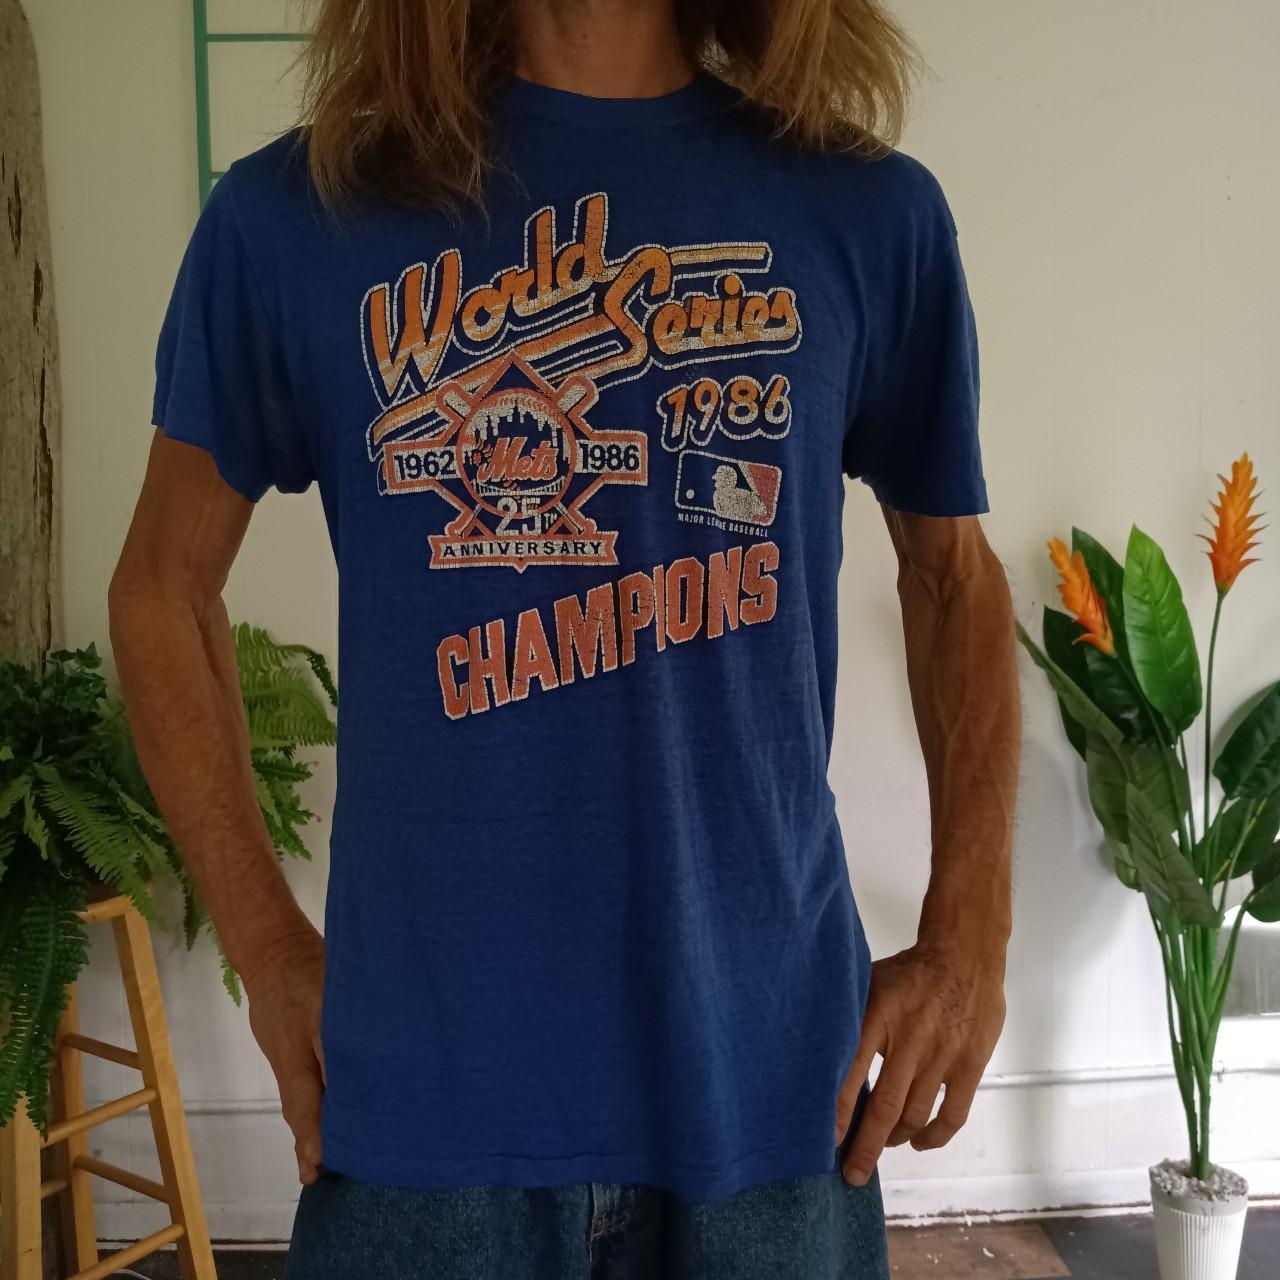 VTG 1986 New York Mets World Series Baseball T-Shirt 80's